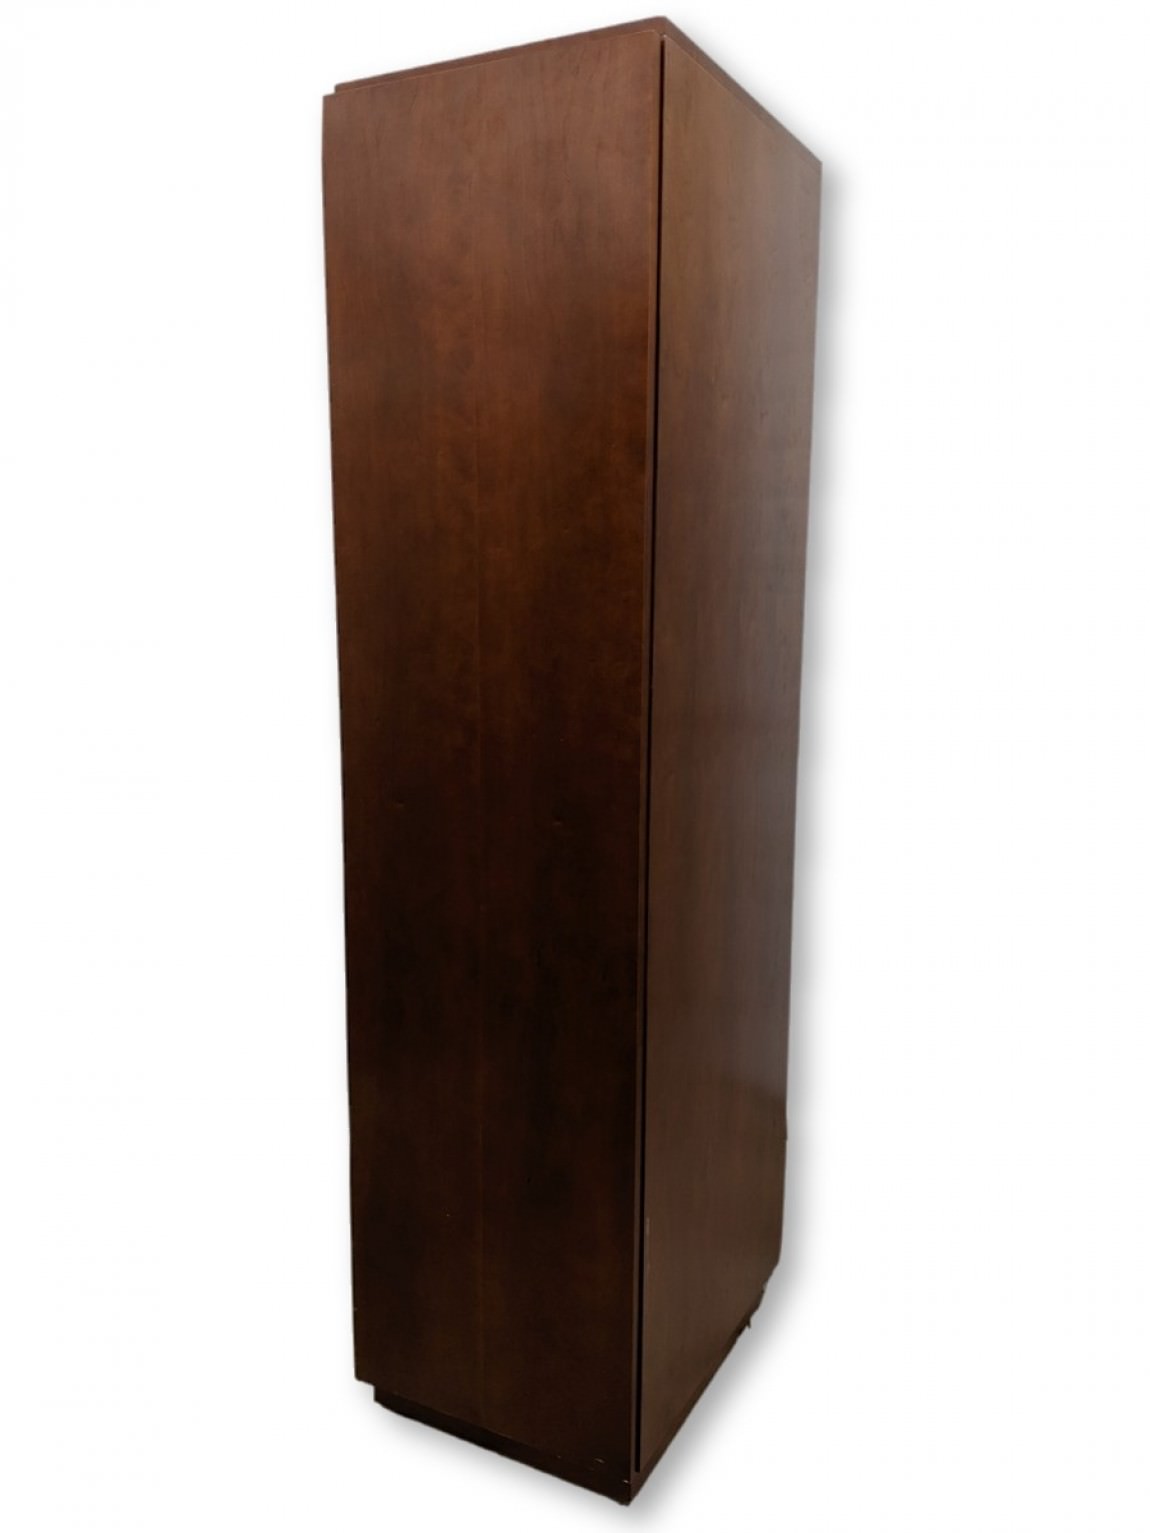 Steelcase Cherry Wardrobe Storage Cabinet – 18 Inch Wide